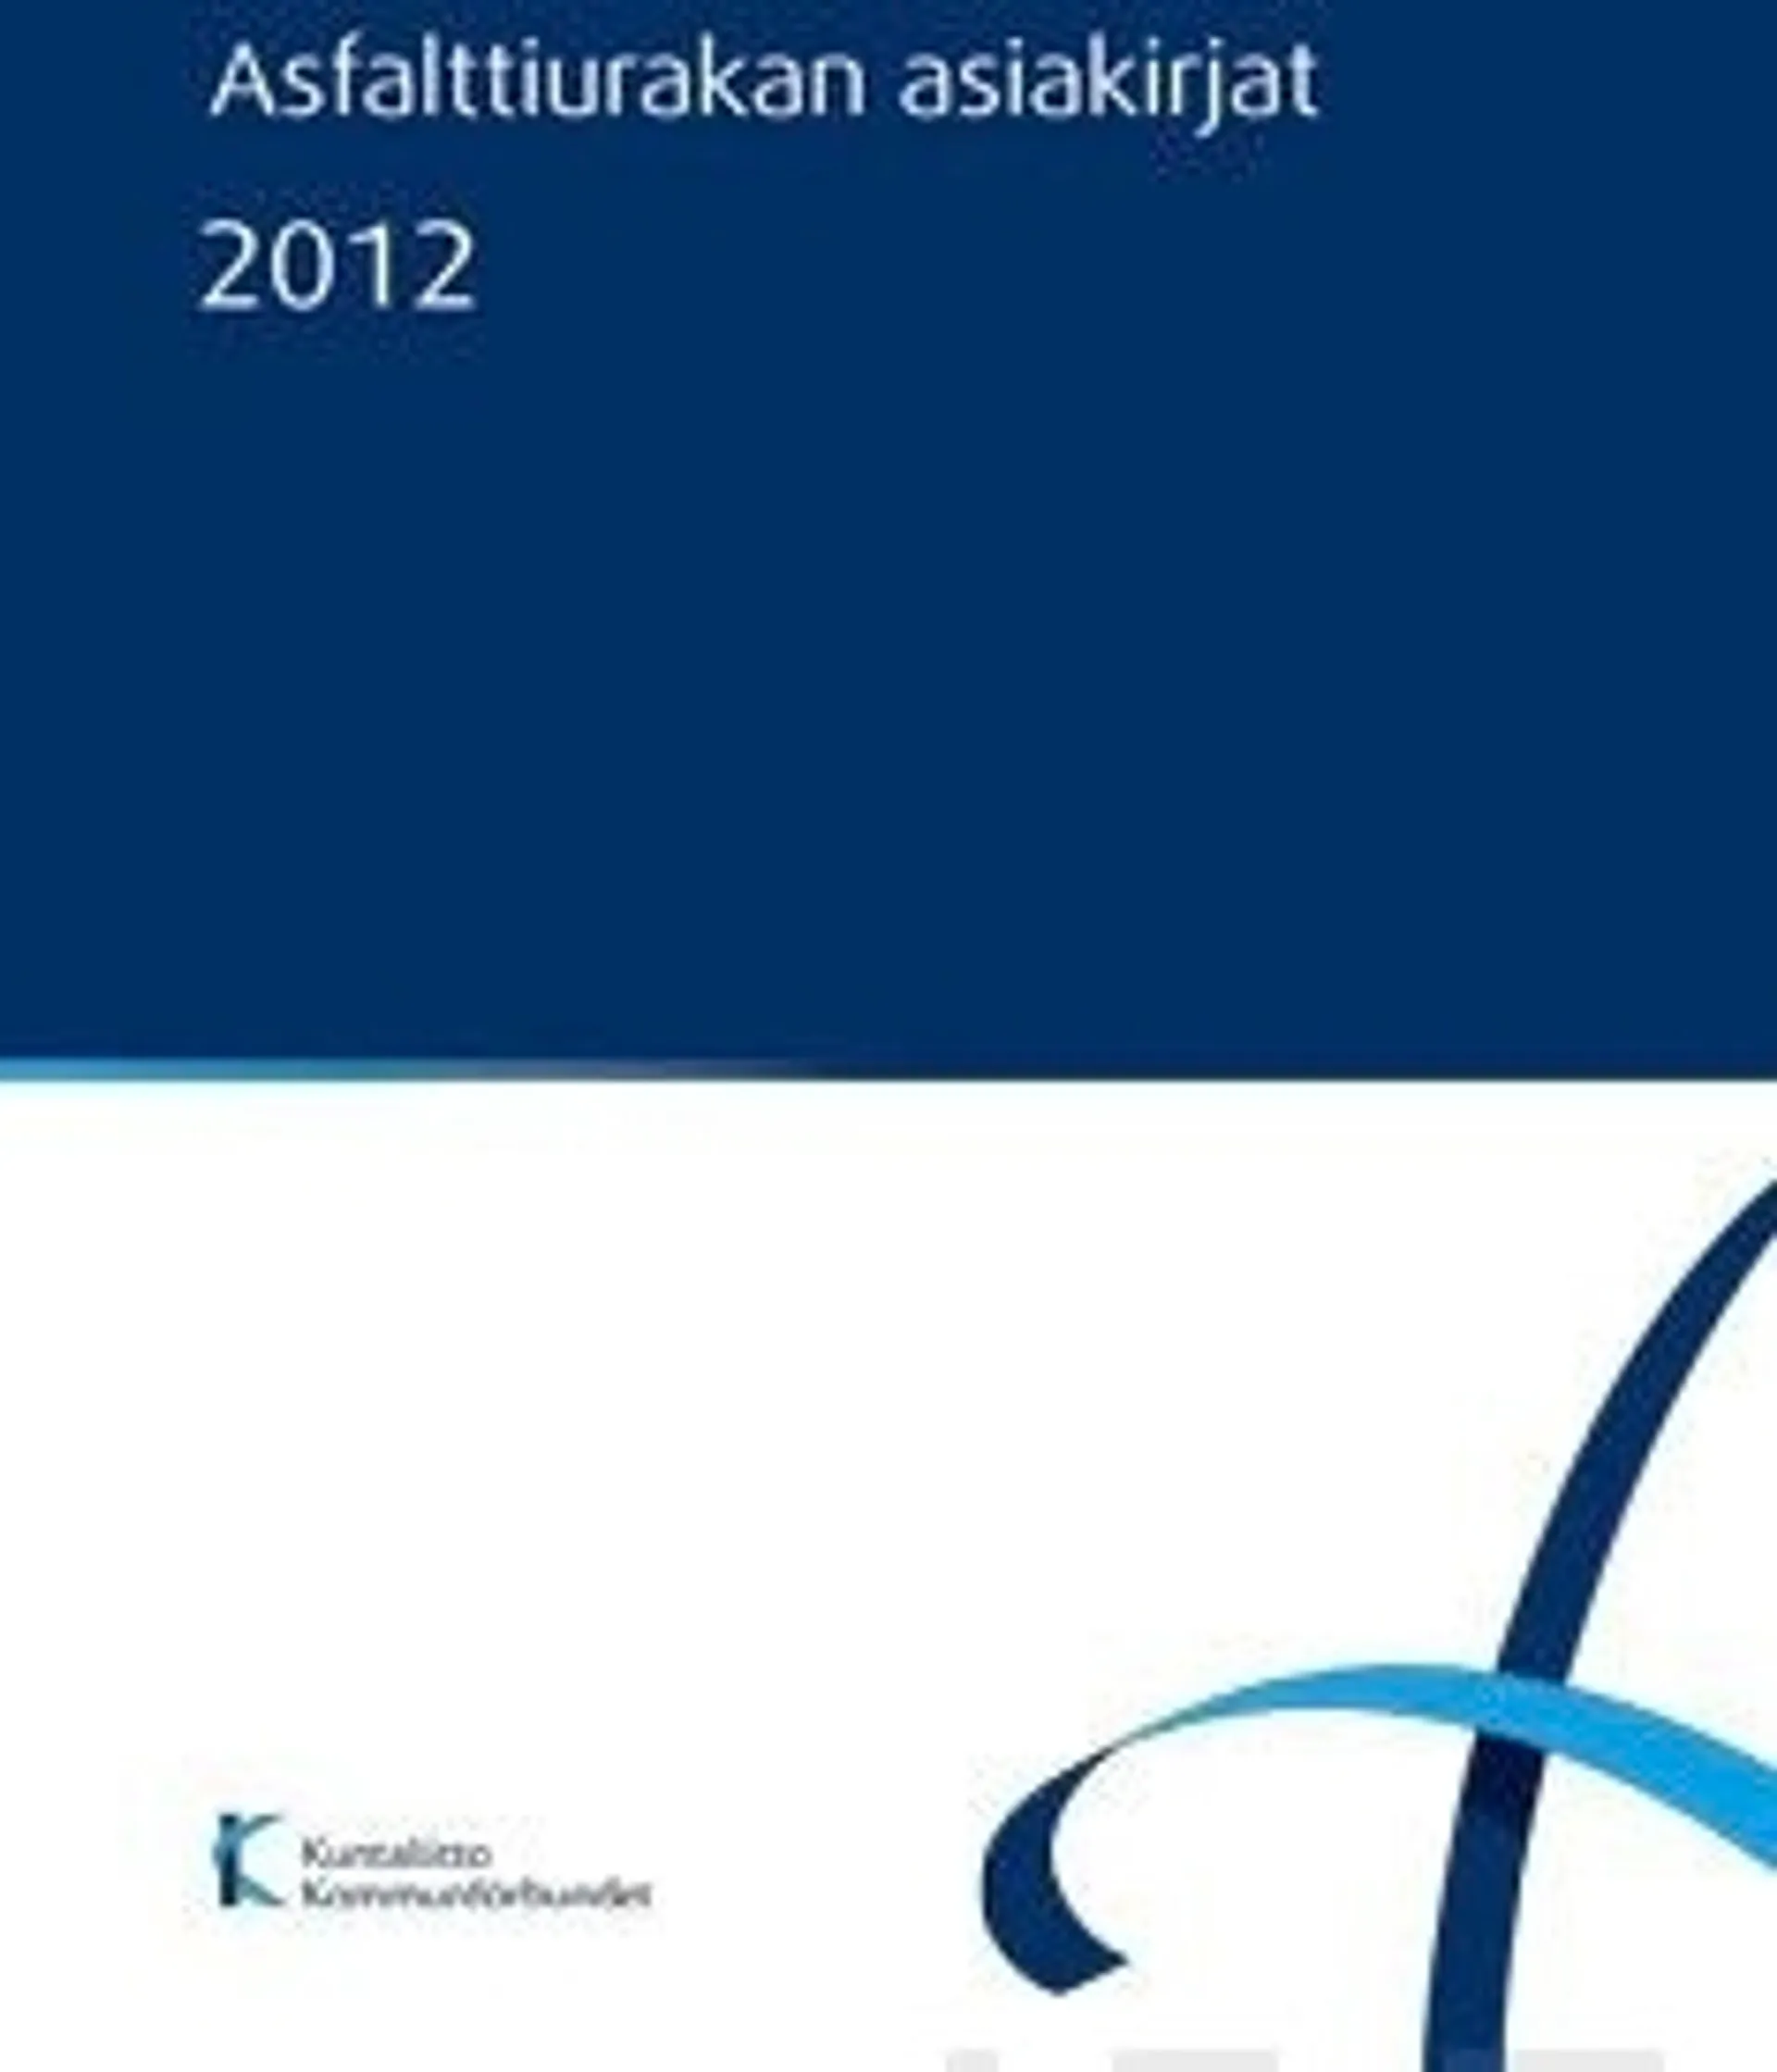 Asfalttiurakan asiakirjat 2012